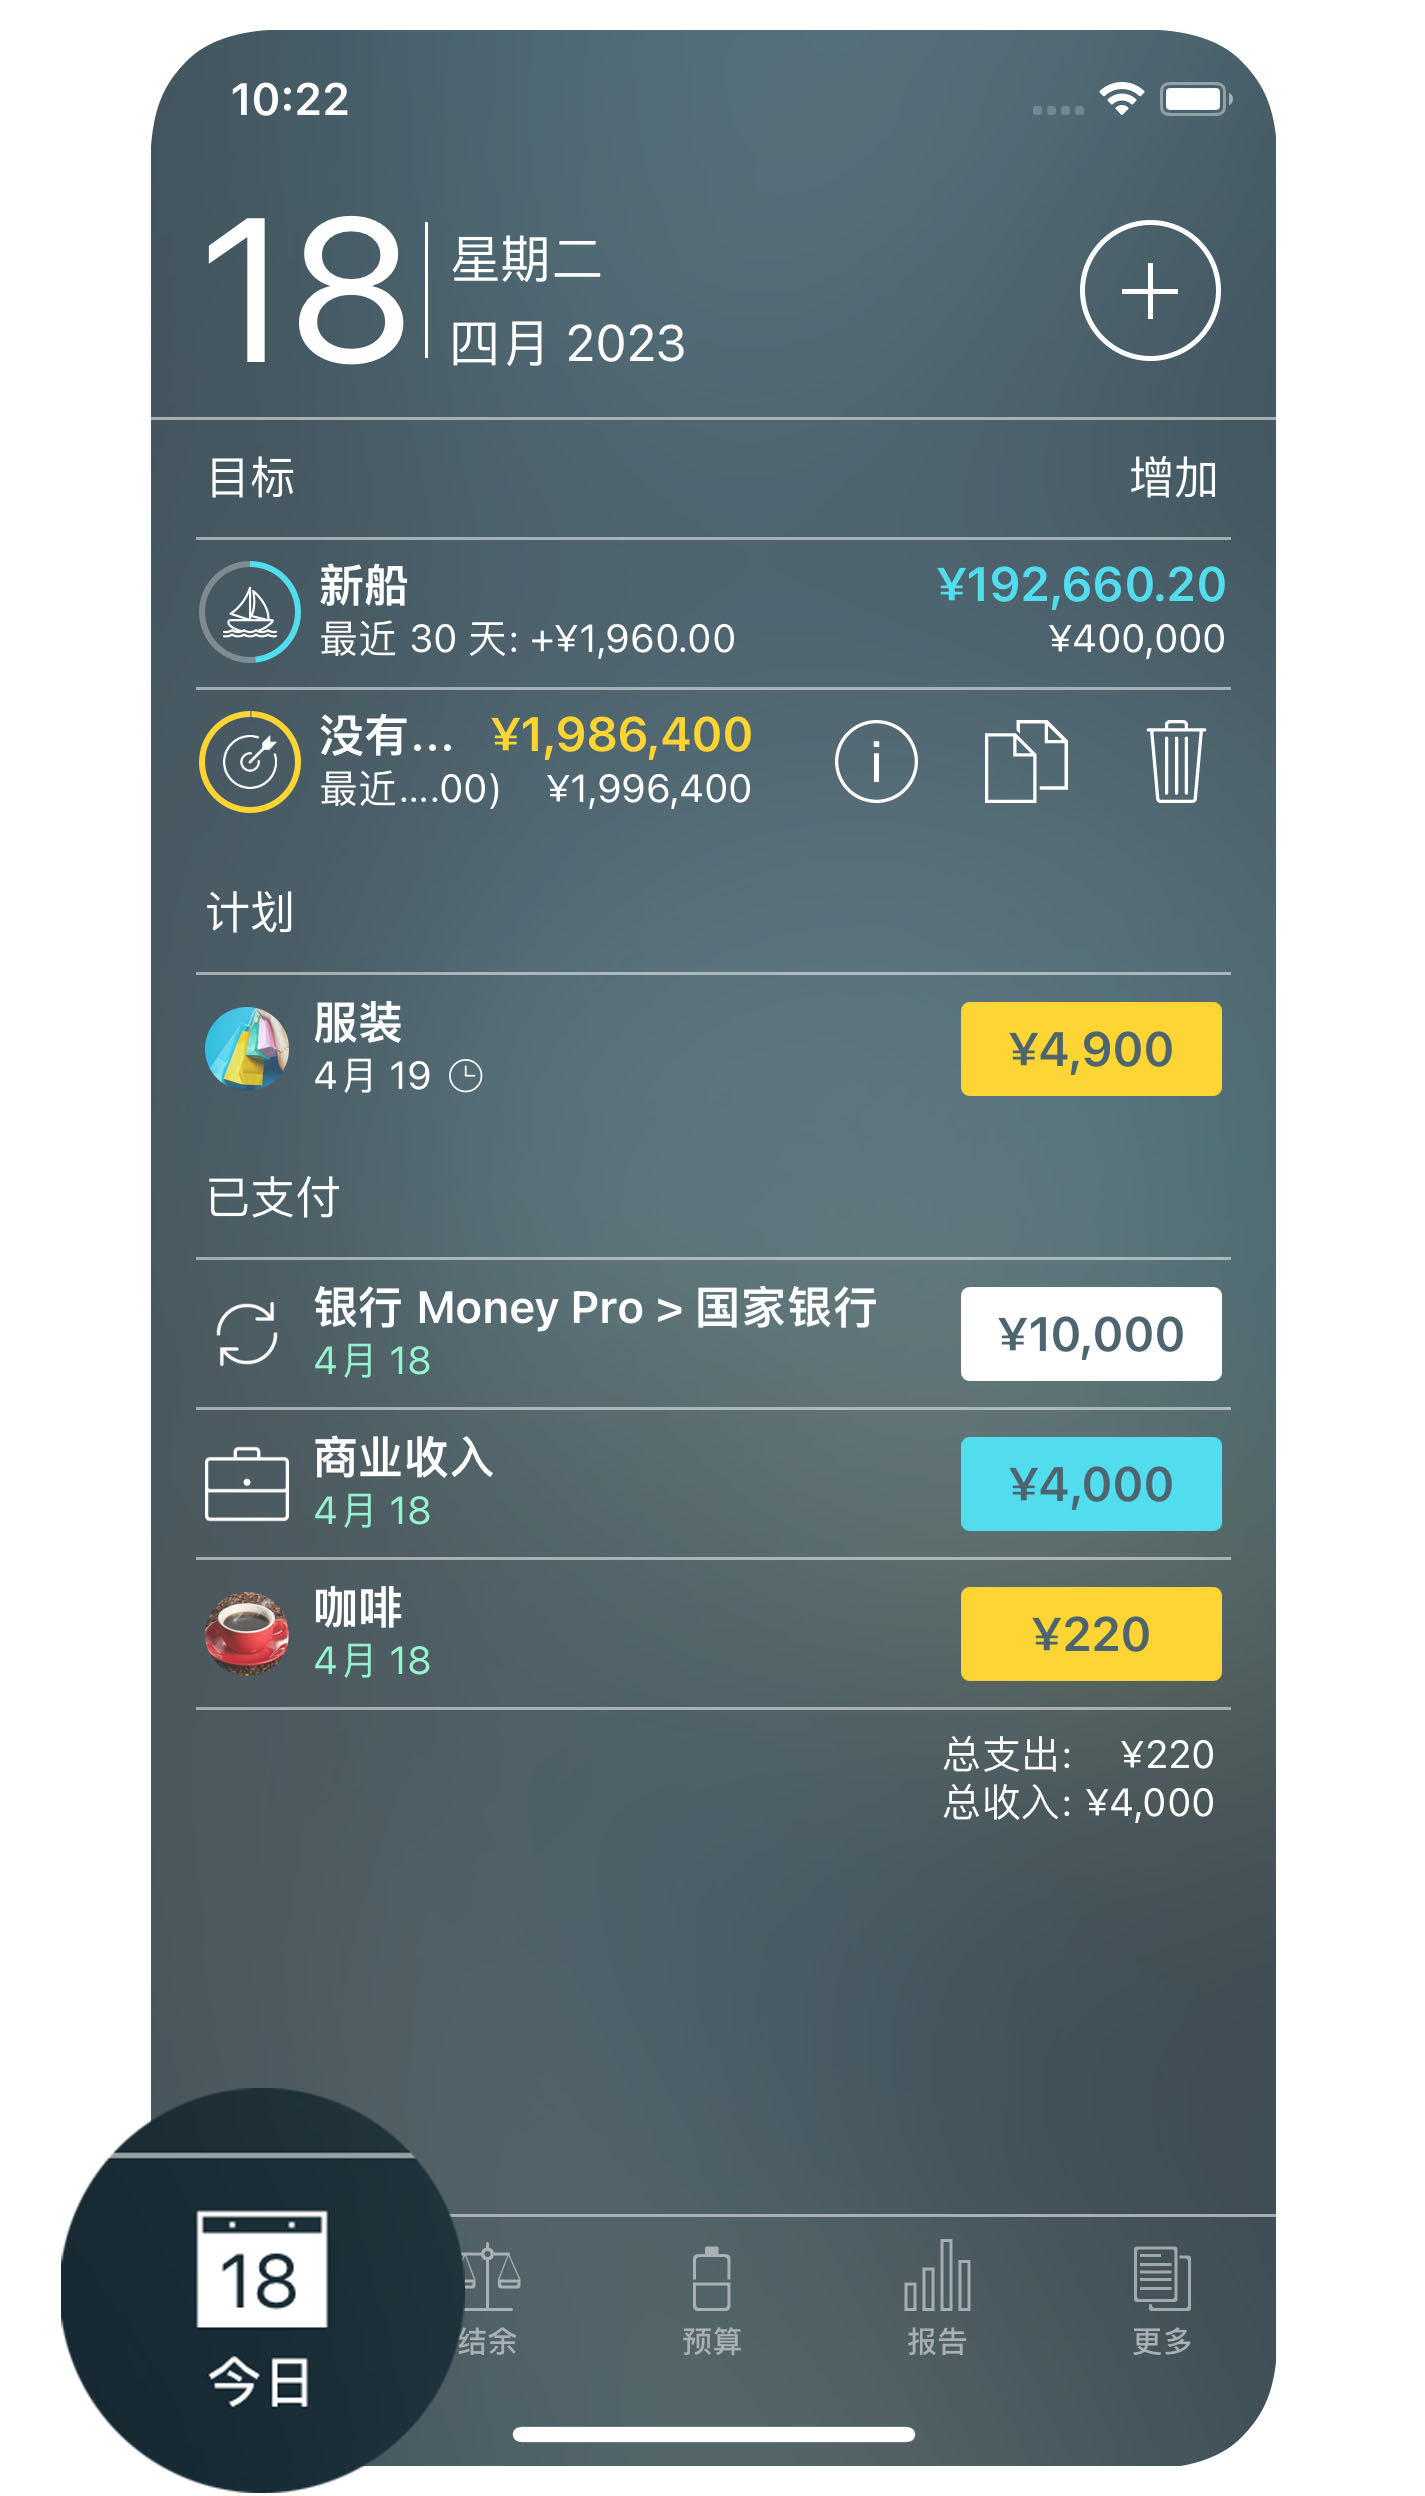 Money Pro - 账单 - iPhone